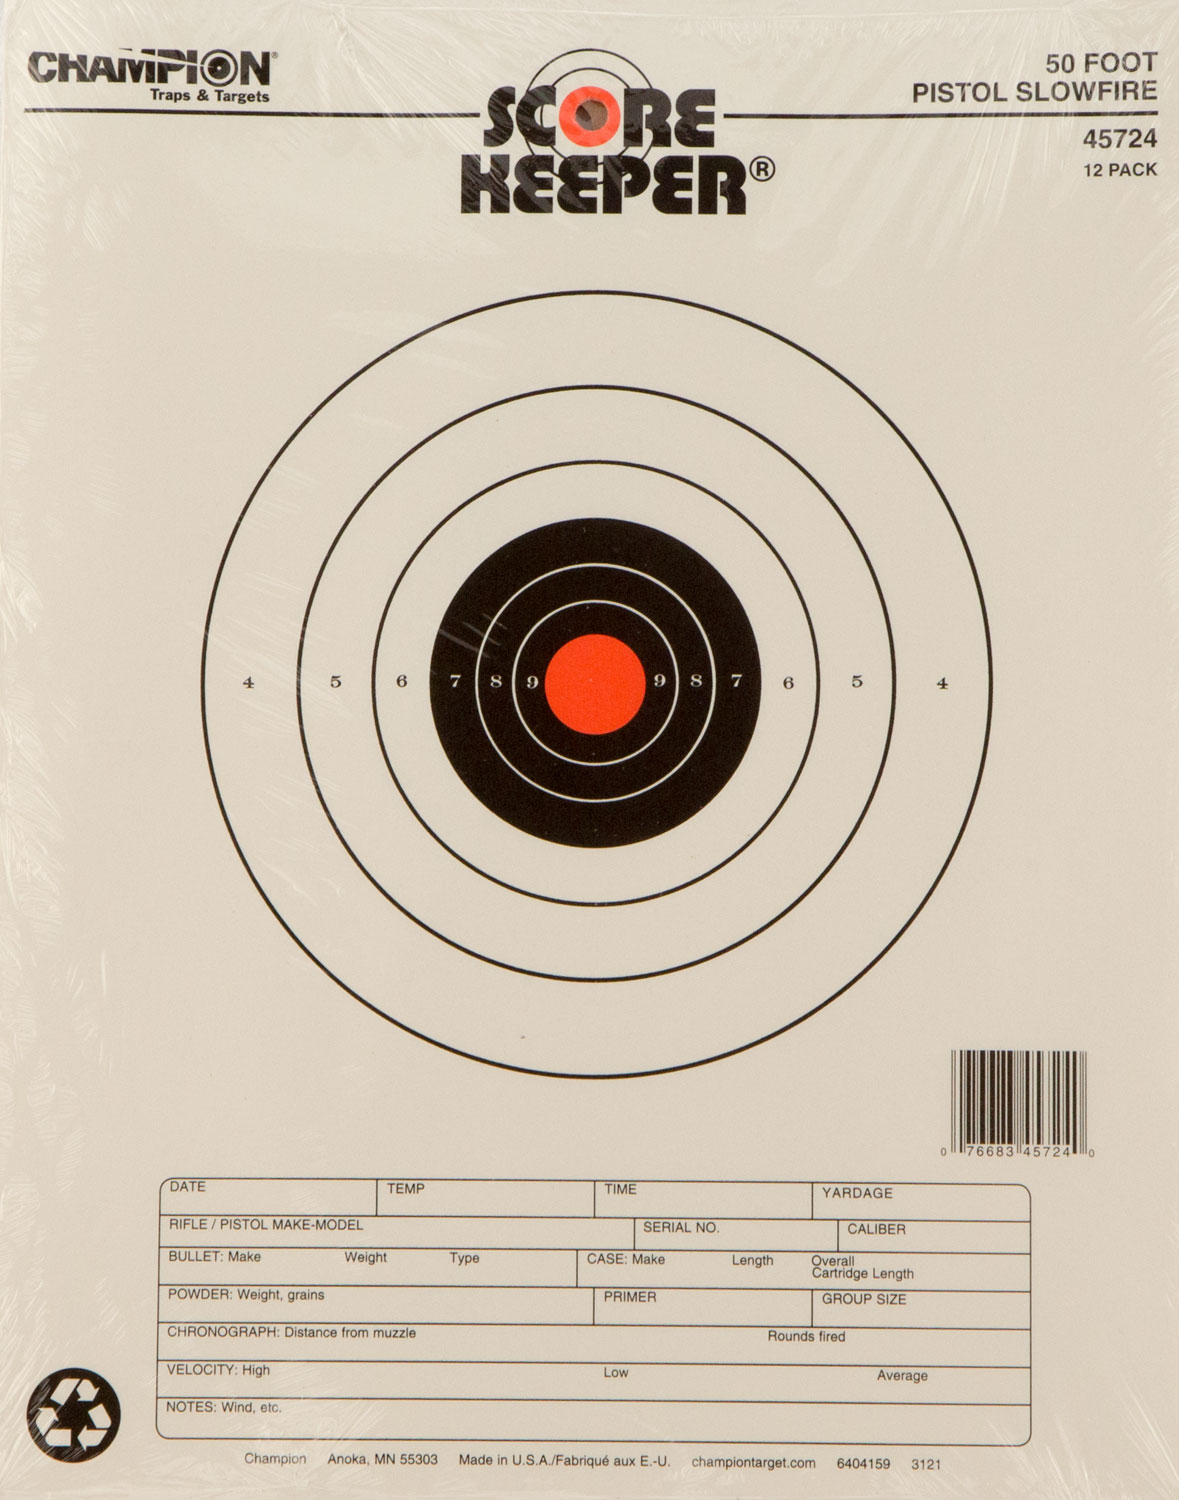 Splatter Shot® 8 Pink Bullseye Target - Peel & Stick - 6 Pack